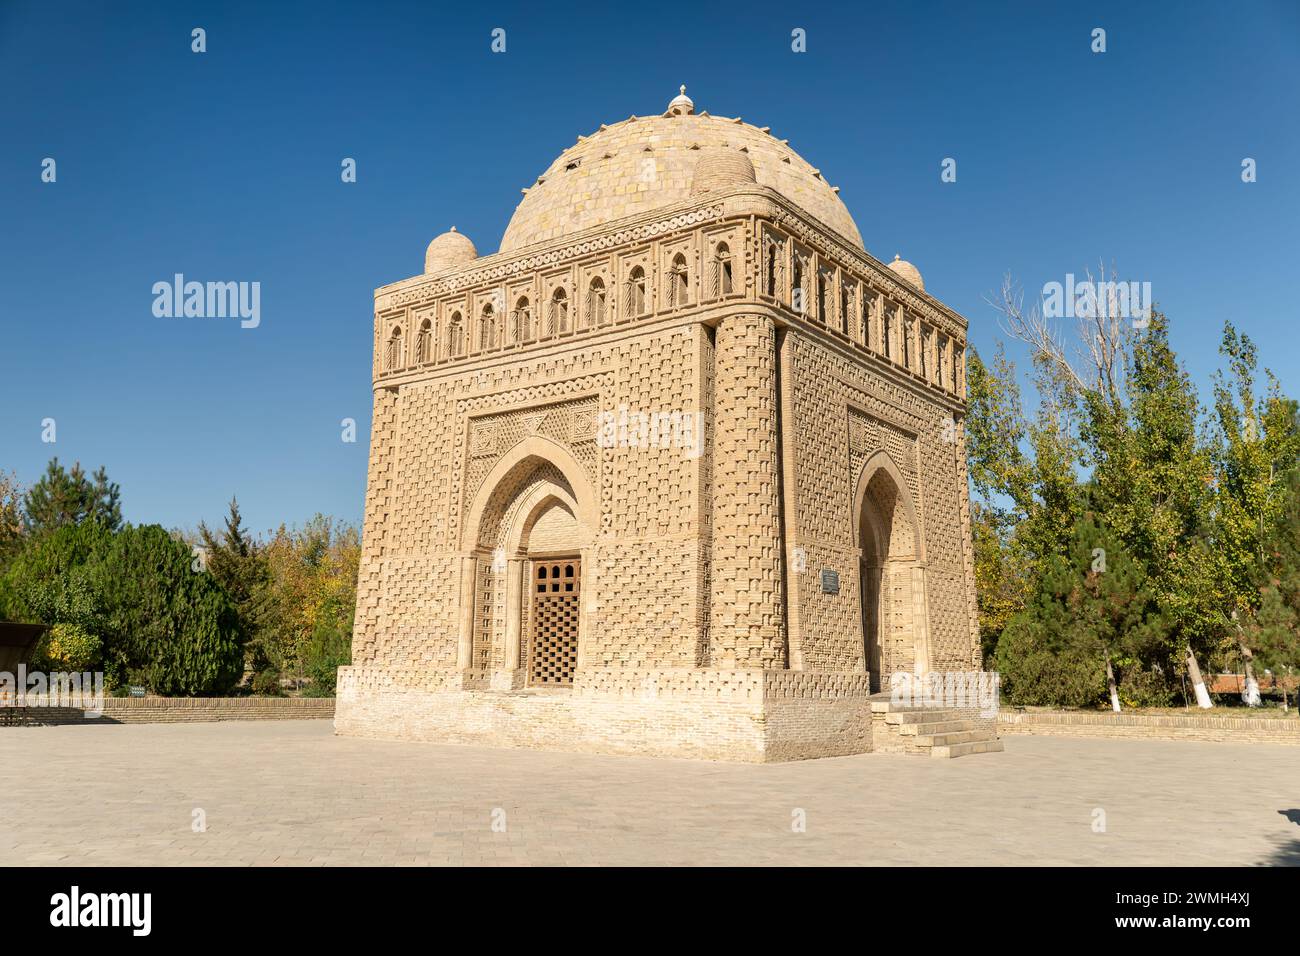 Vue imprenable sur le Mausolée Samanide à Boukhara, Ouzbékistan. L'ancien bâtiment est le seul monument survivant de l'ère samanide. Boukhara est un p. Banque D'Images